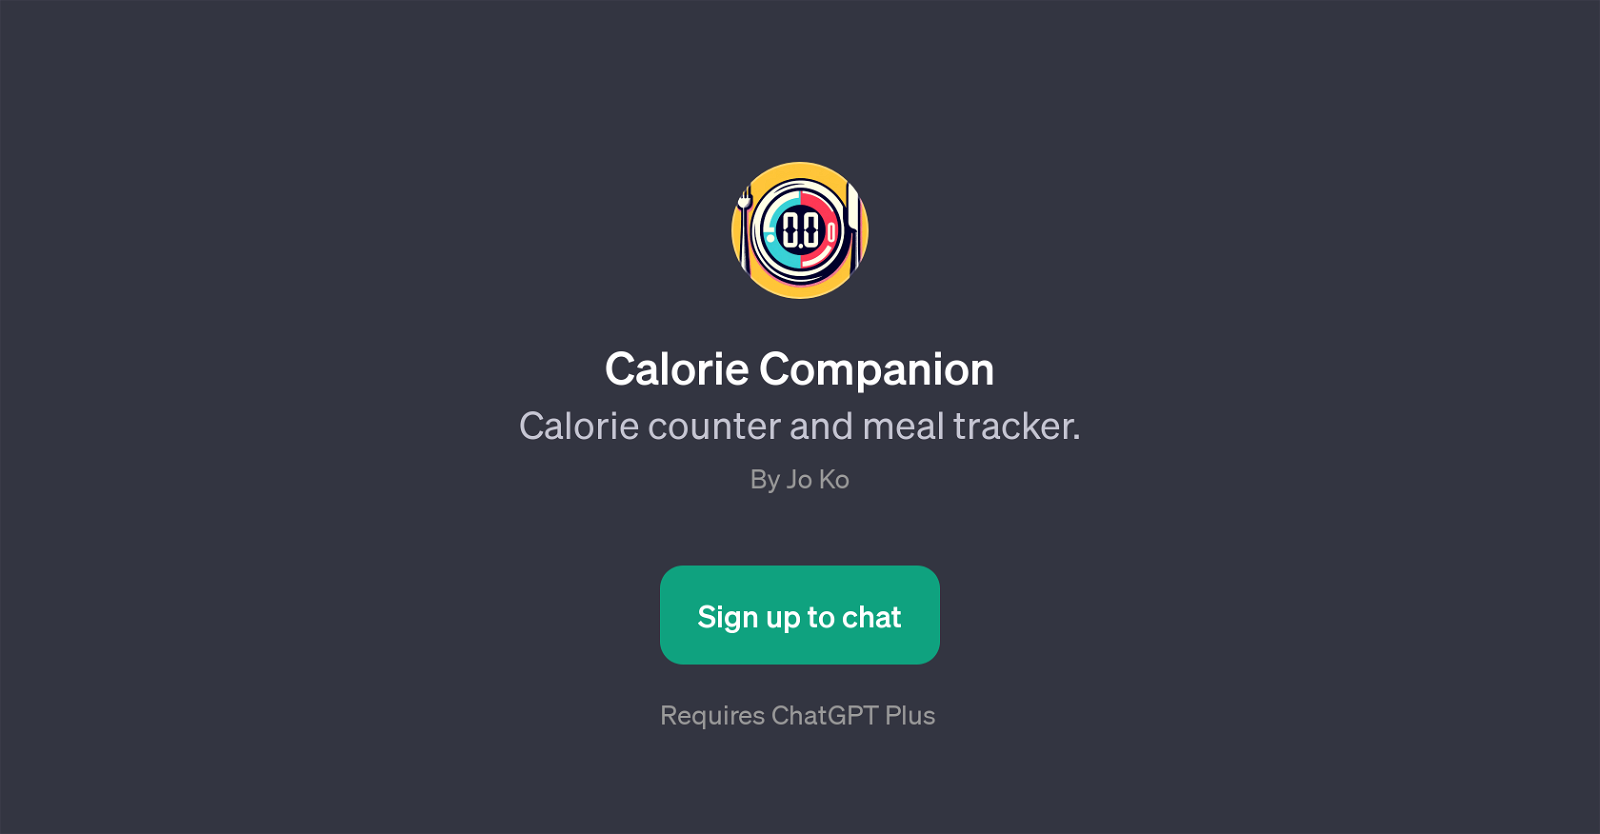 Calorie Companion website